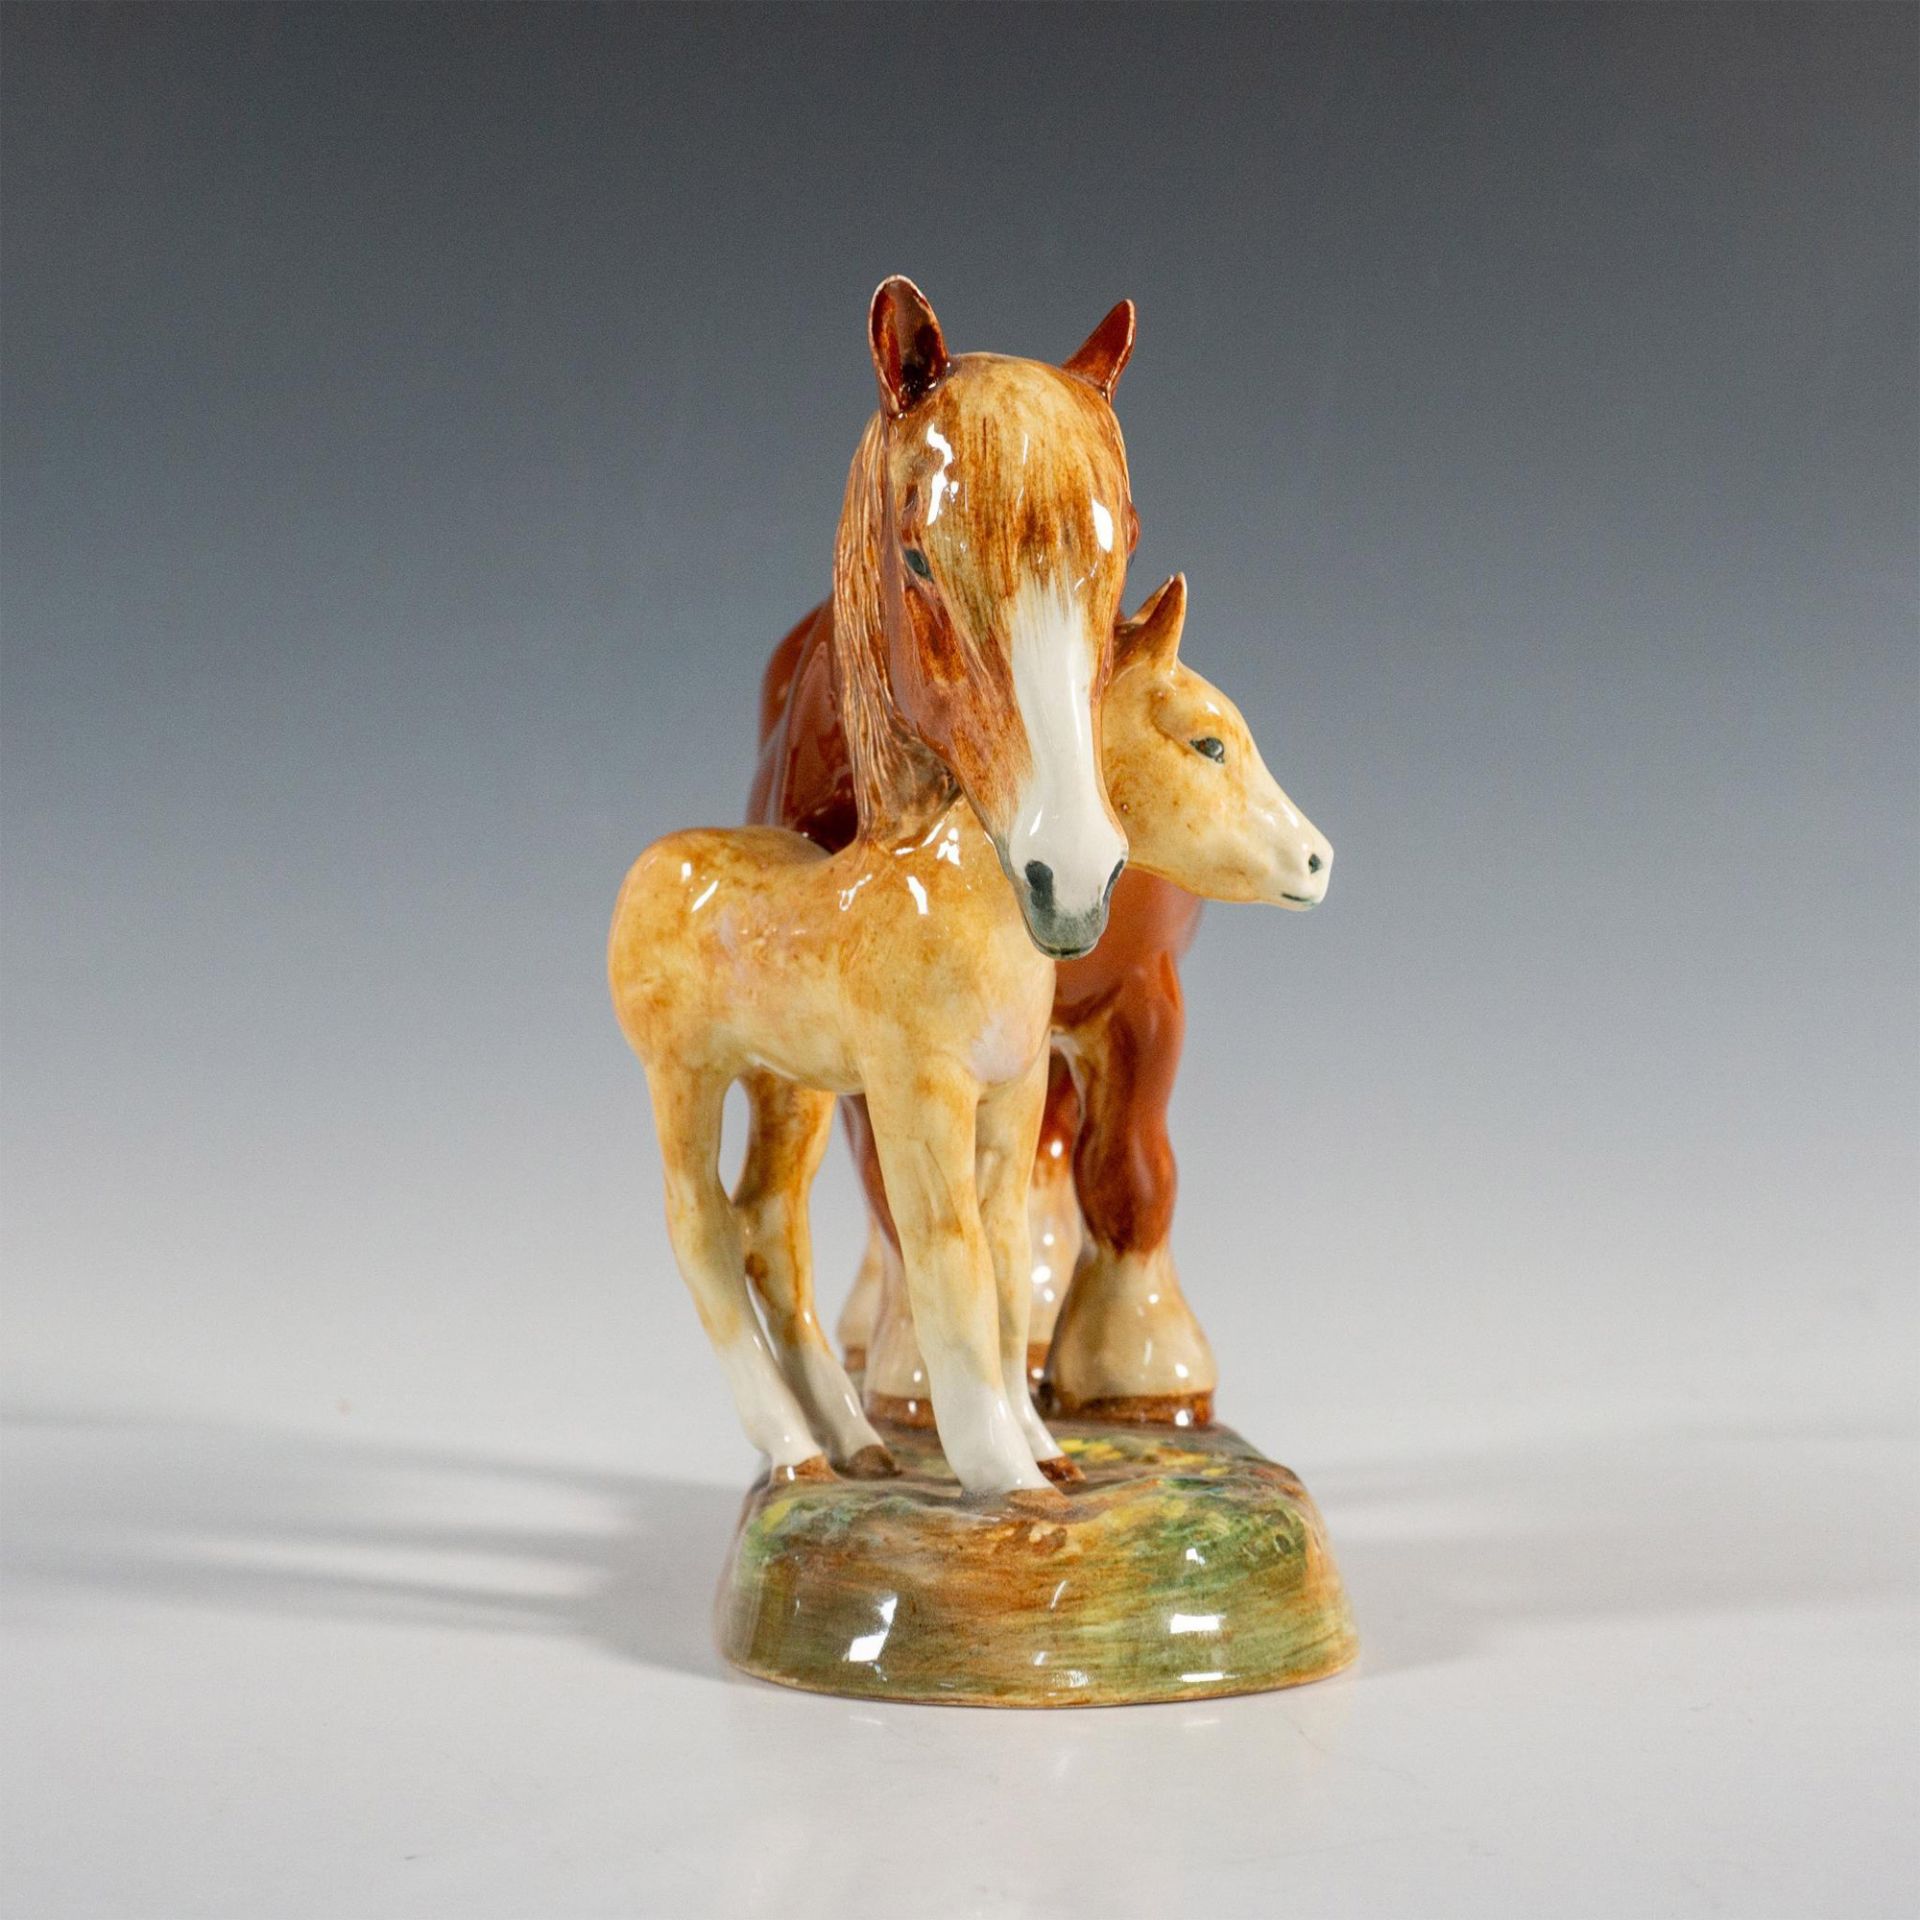 Royal Doulton Porcelain Horse Figurine, HN2522 - Image 2 of 5